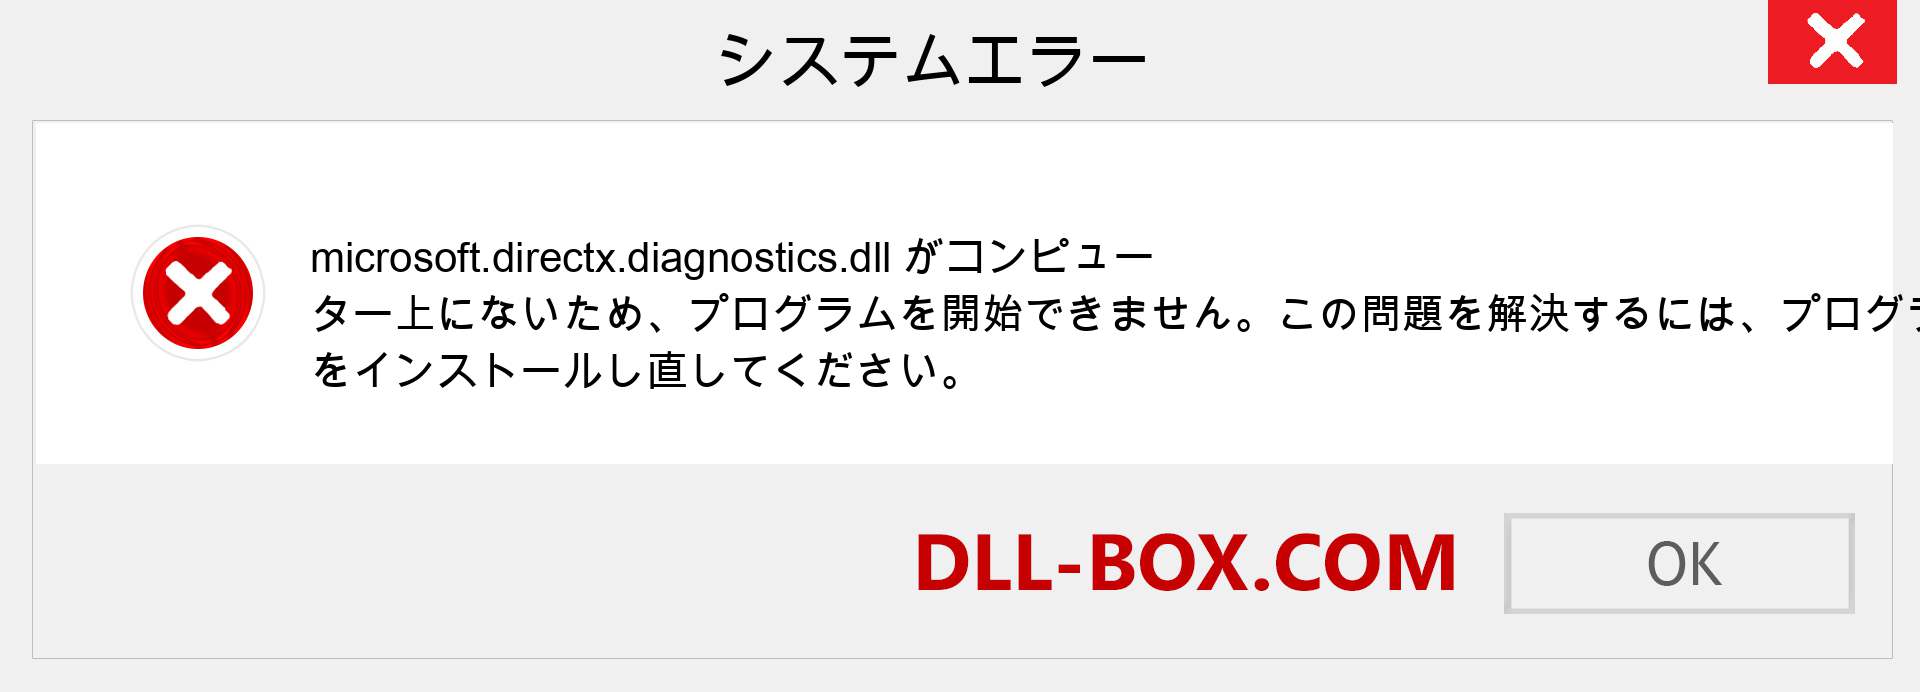 microsoft.directx.diagnostics.dllファイルがありませんか？ Windows 7、8、10用にダウンロード-Windows、写真、画像でmicrosoft.directx.diagnosticsdllの欠落エラーを修正